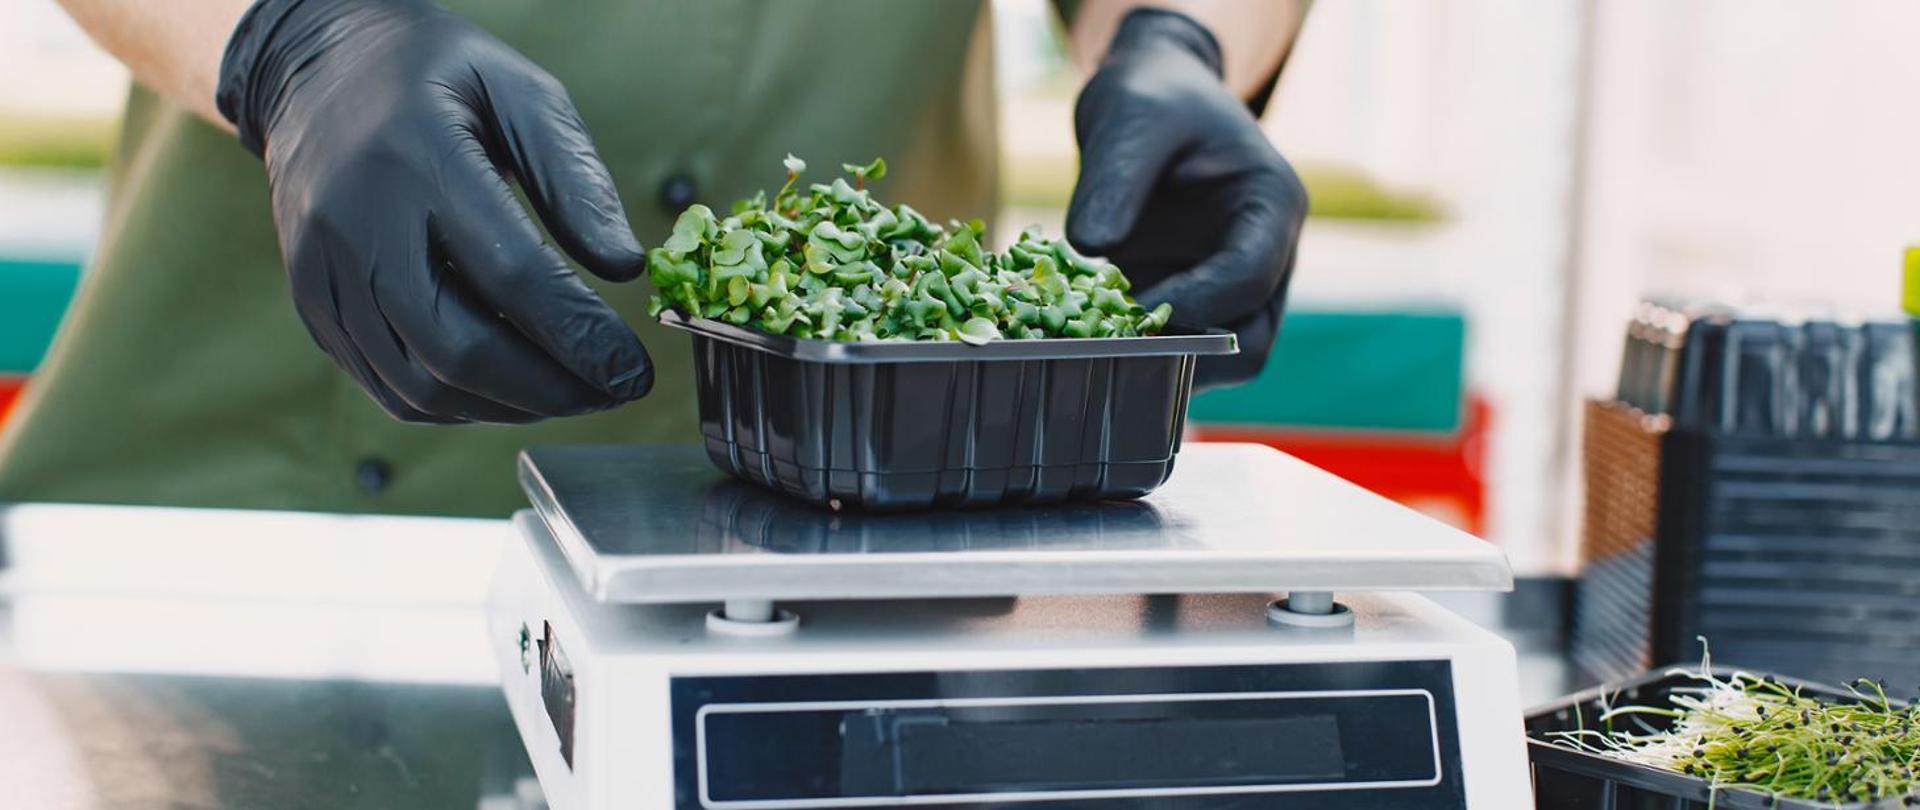 na wadze kuchennej osoba waży liściaste warzywo w plastikowym pojemniku